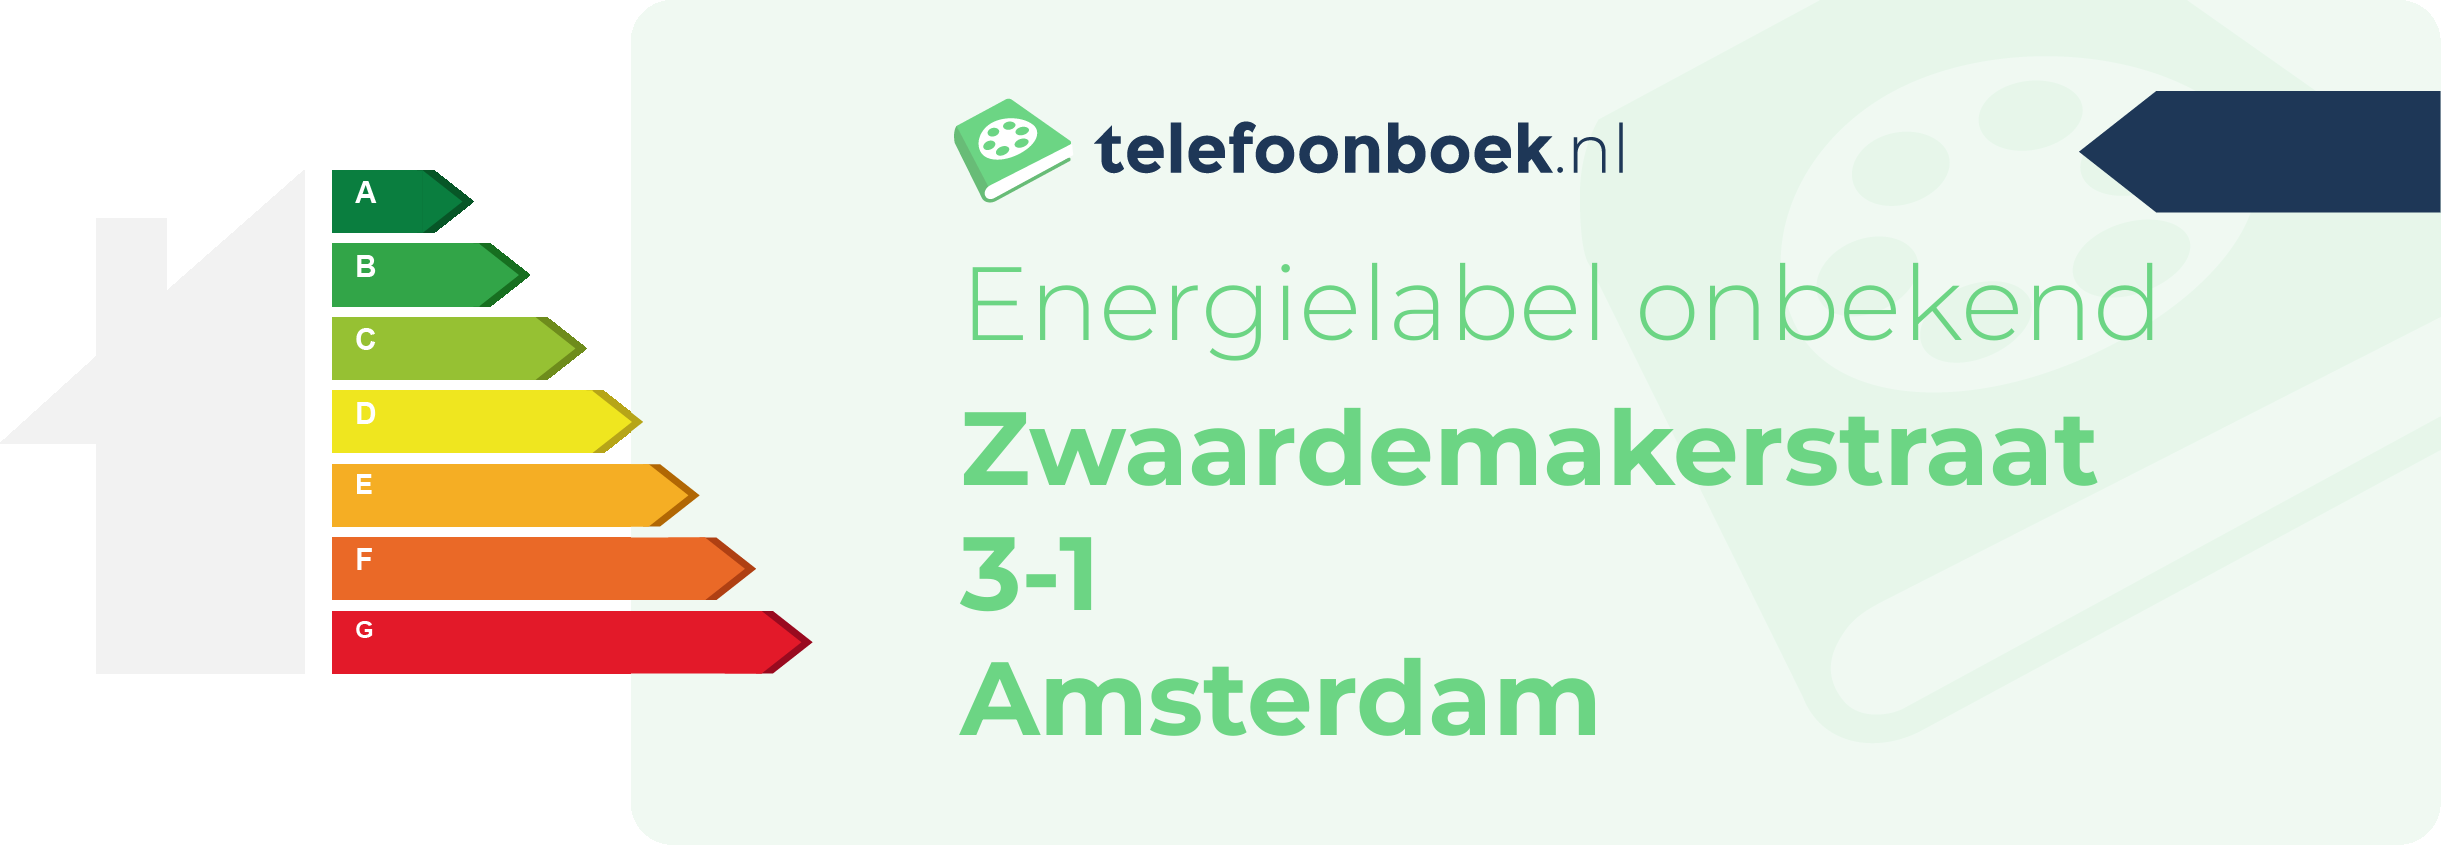 Energielabel Zwaardemakerstraat 3-1 Amsterdam